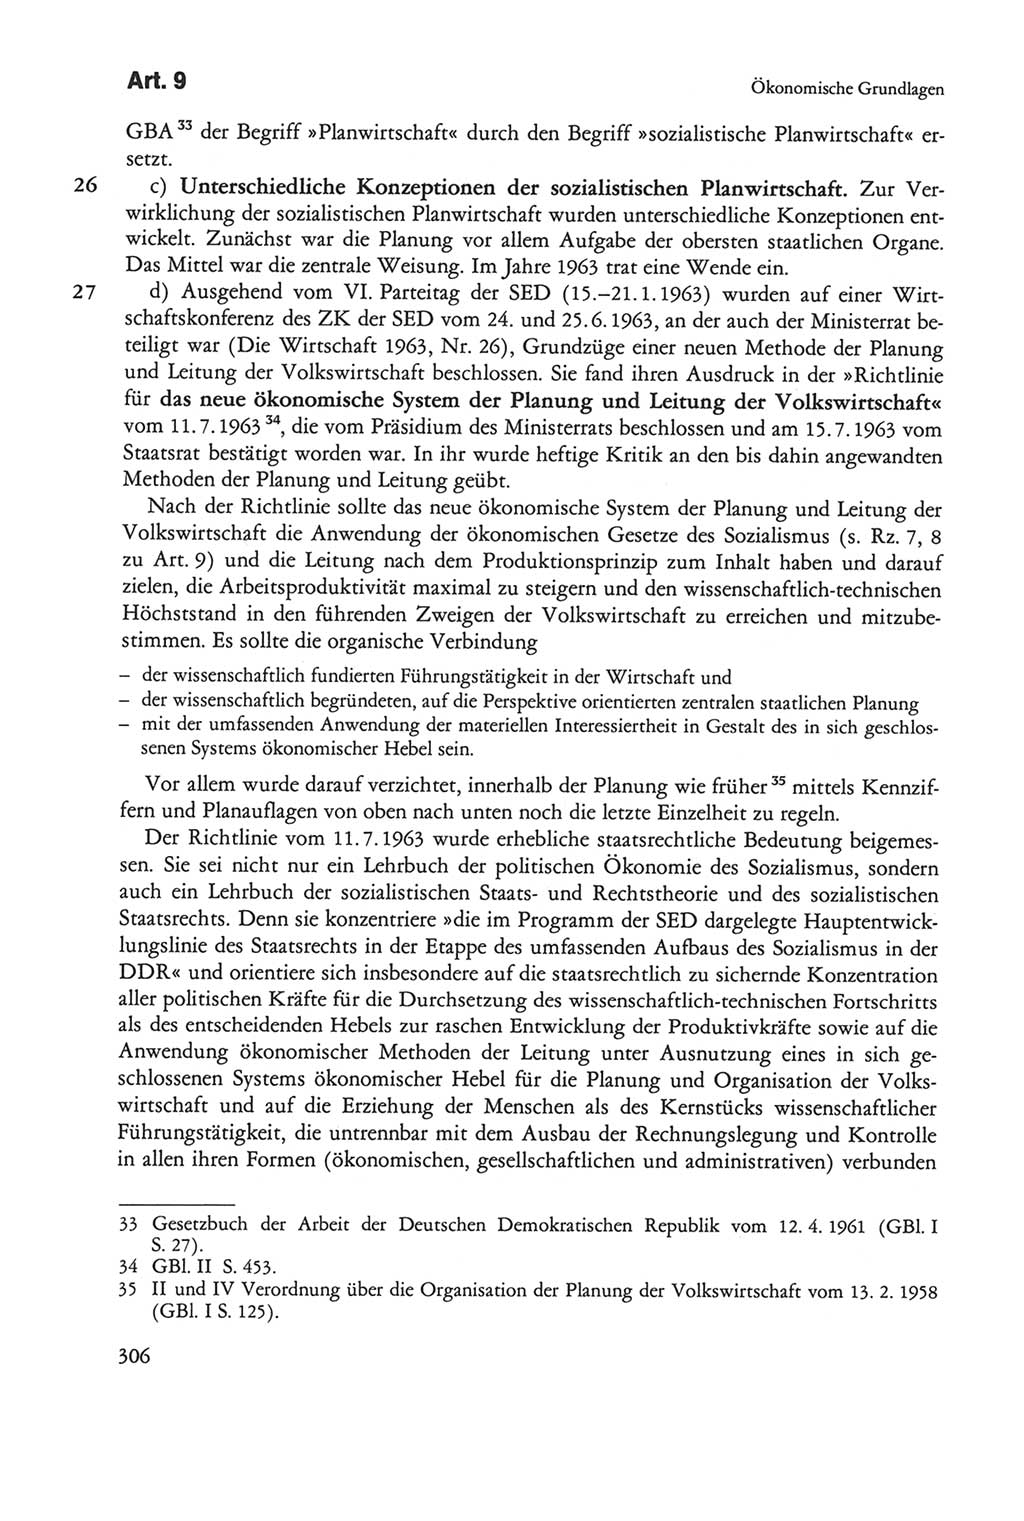 Die sozialistische Verfassung der Deutschen Demokratischen Republik (DDR), Kommentar mit einem Nachtrag 1997, Seite 306 (Soz. Verf. DDR Komm. Nachtr. 1997, S. 306)